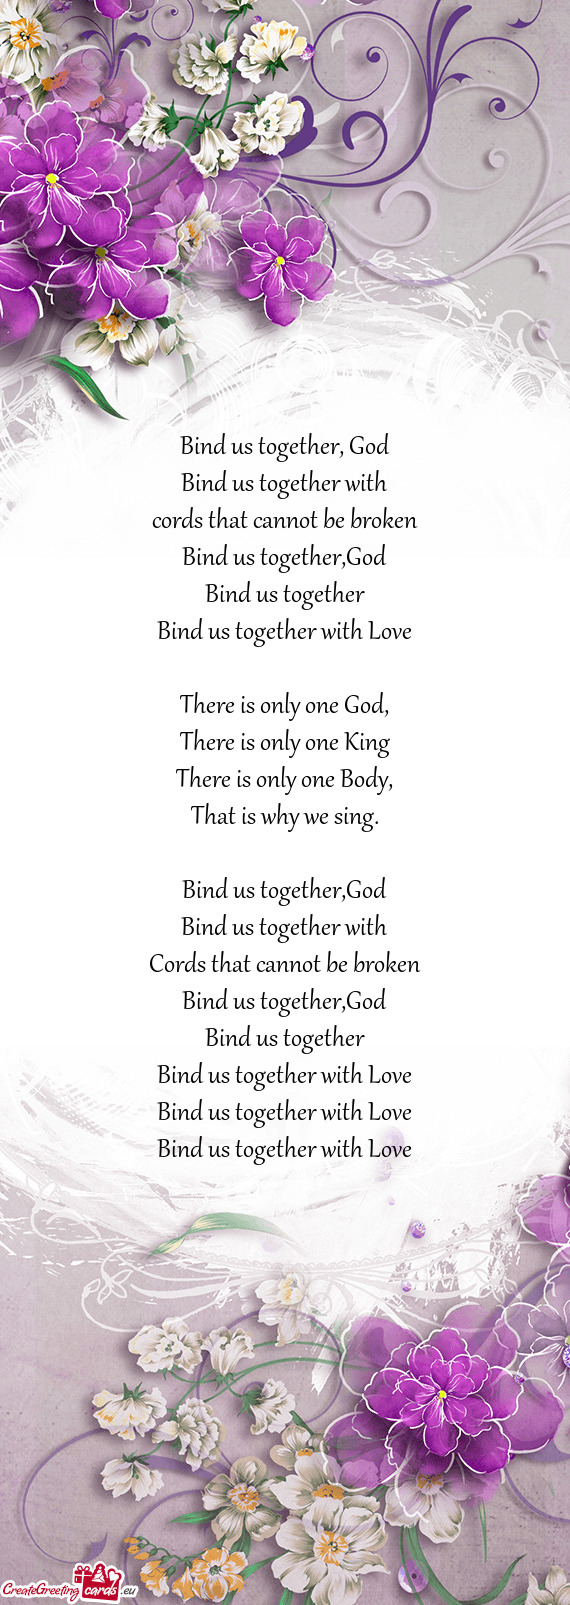 Bind us together, God